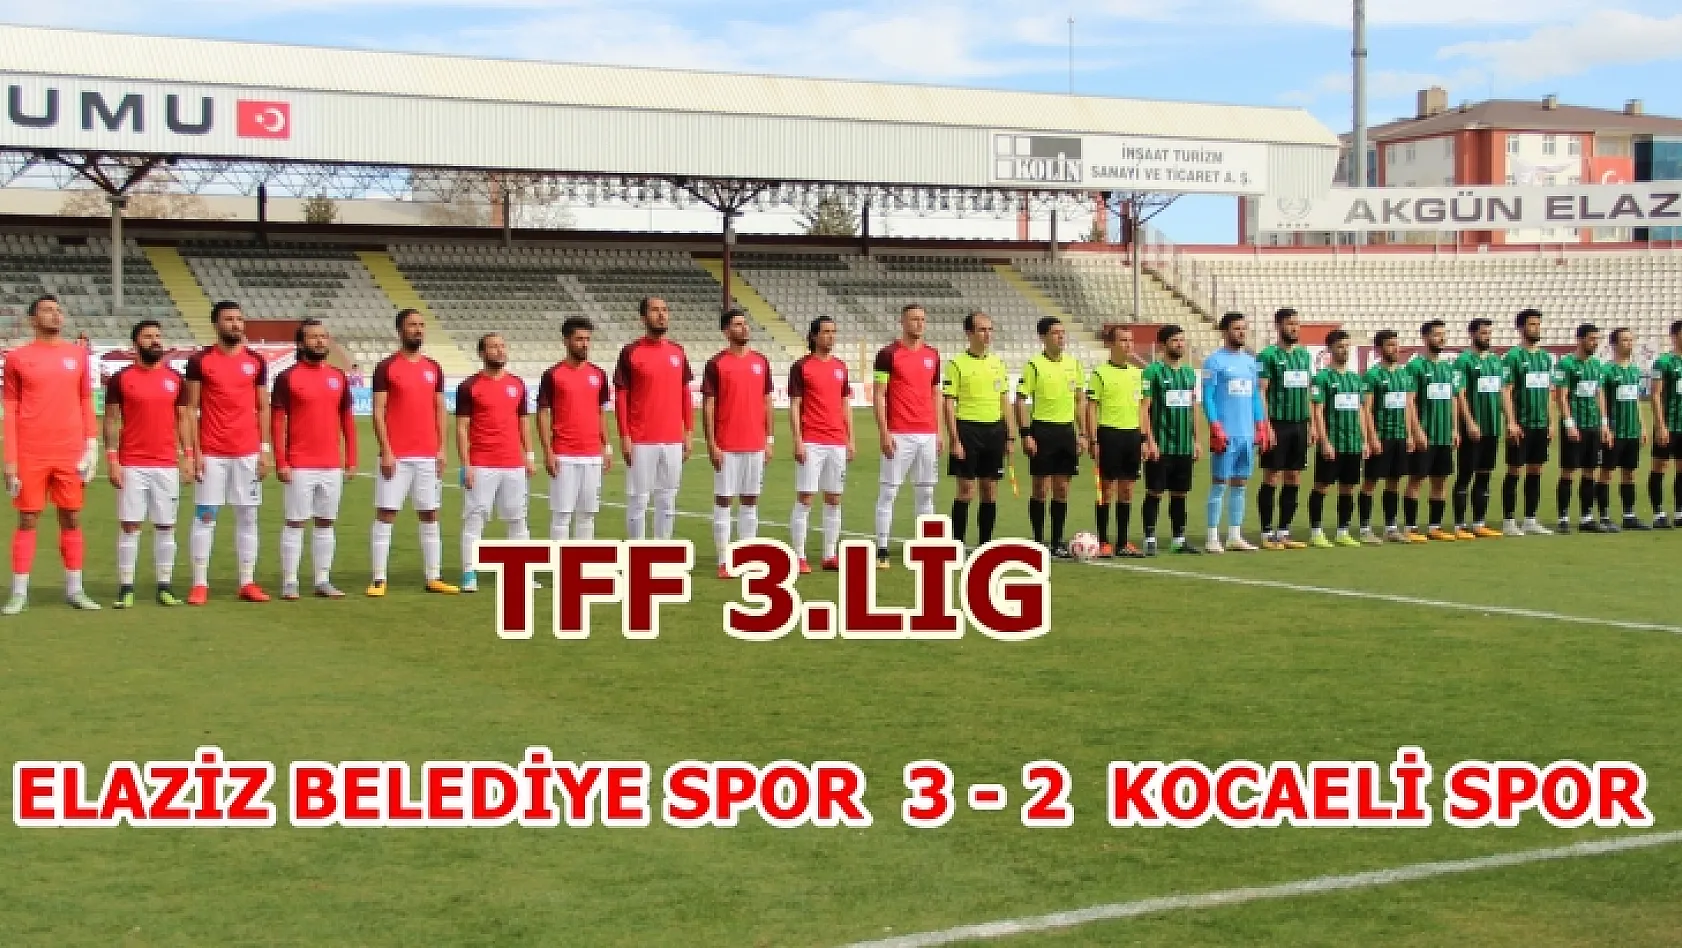 Elaziz Belediye Spor  3 - 2 Kocaeli Spor